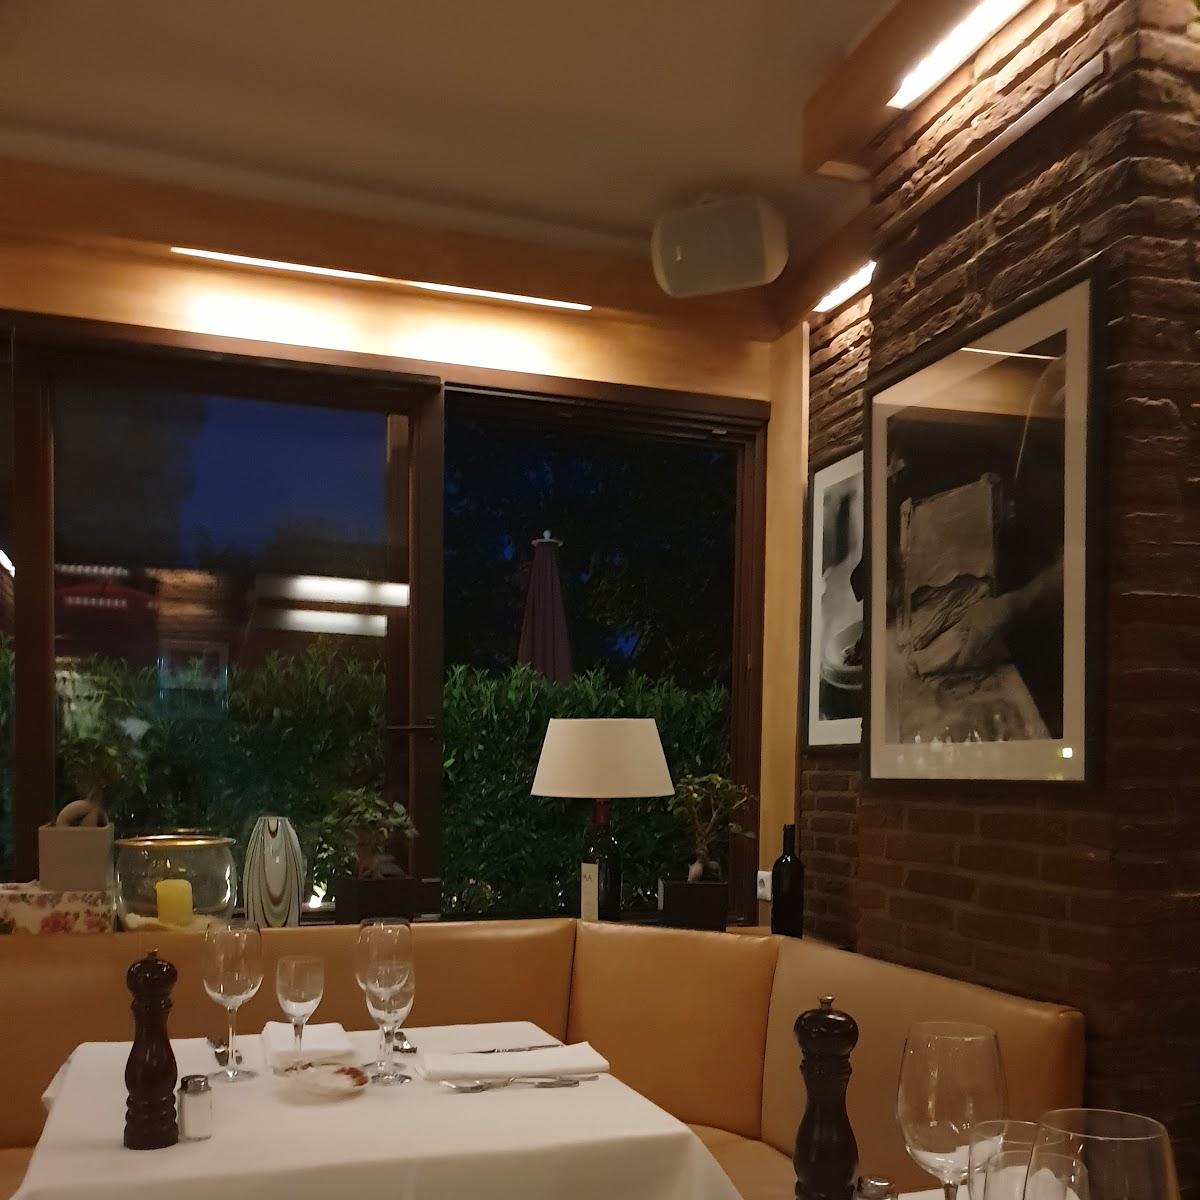 Restaurant "Ristorante L